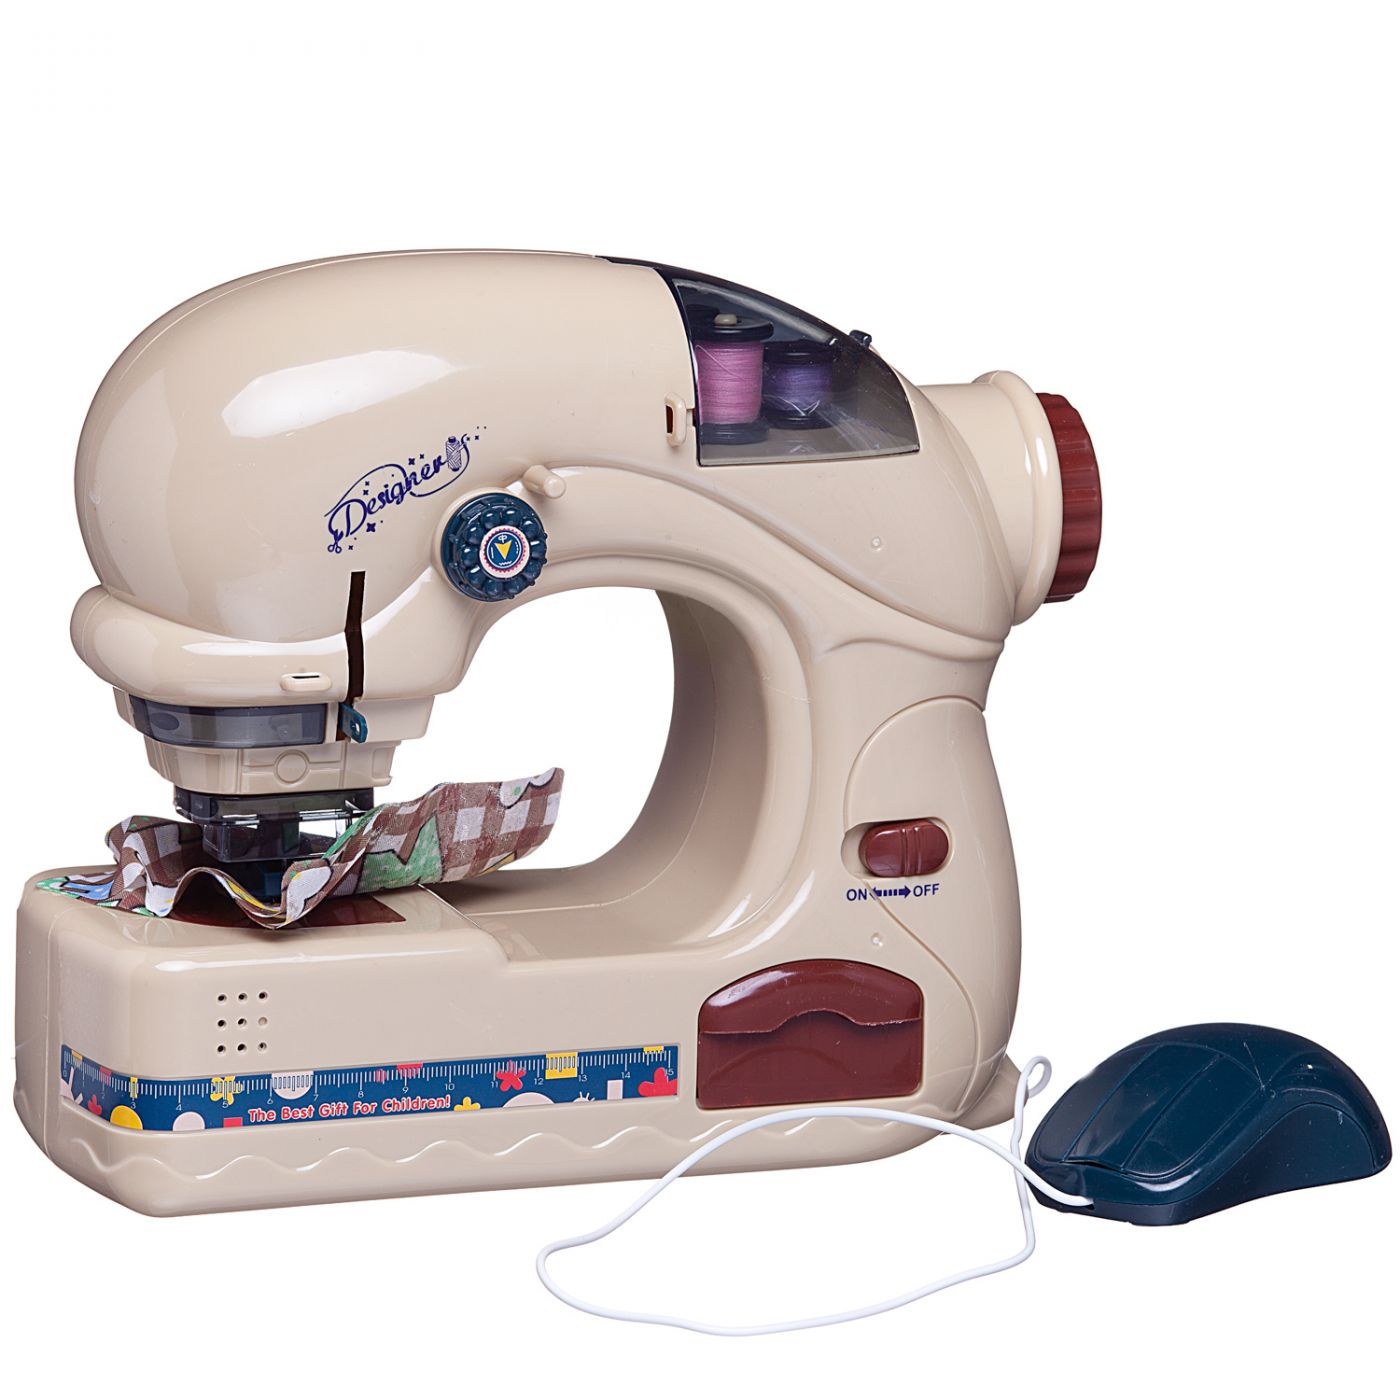 Швейная машинка детская с нитками и мышкой для включения (6738A)